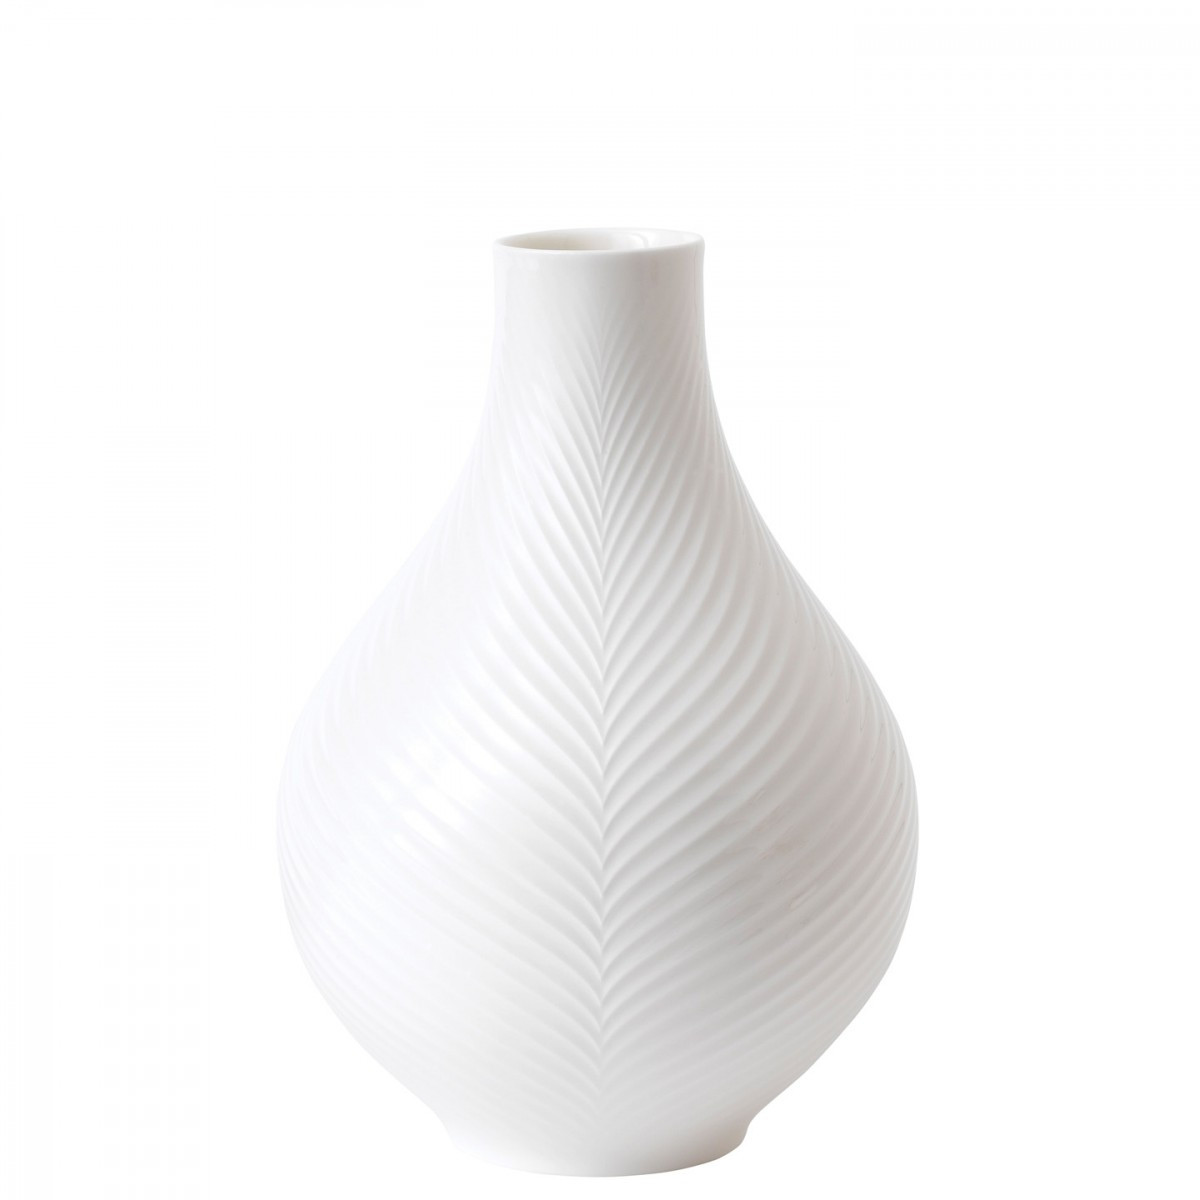 19 Fabulous Wedgwood Bud Vase 2023 free download wedgwood bud vase of white folia bulb vase 23cm wedgwooda uk regarding white folia bulb vase 23cm